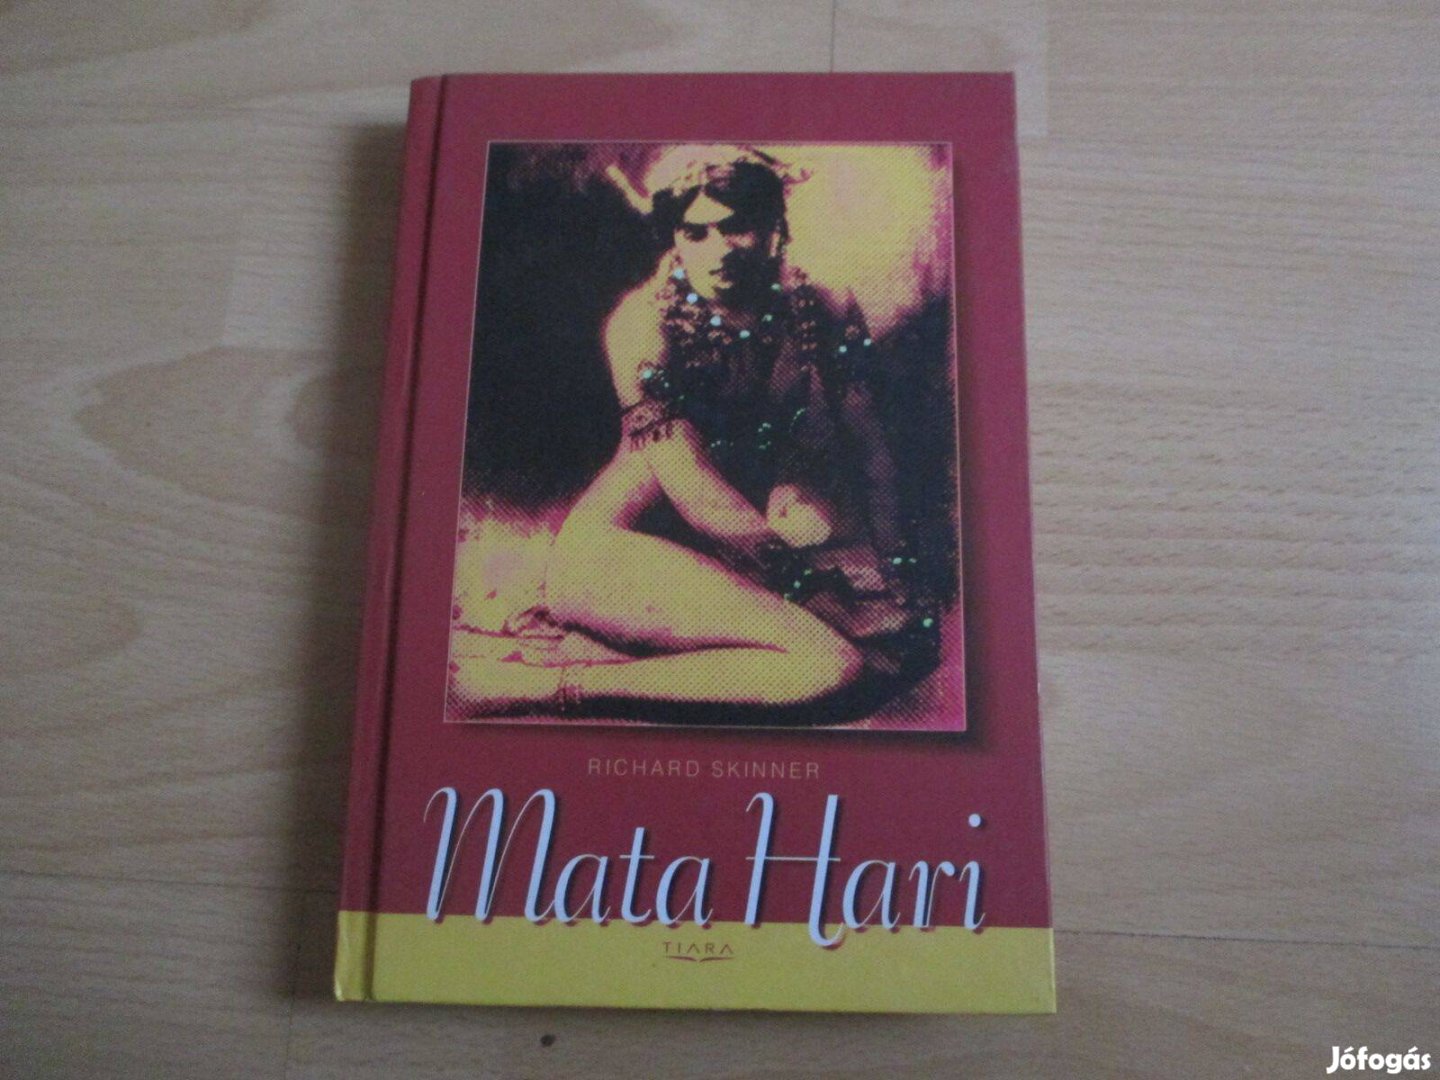 Mata Hari c könyv 500 Ft